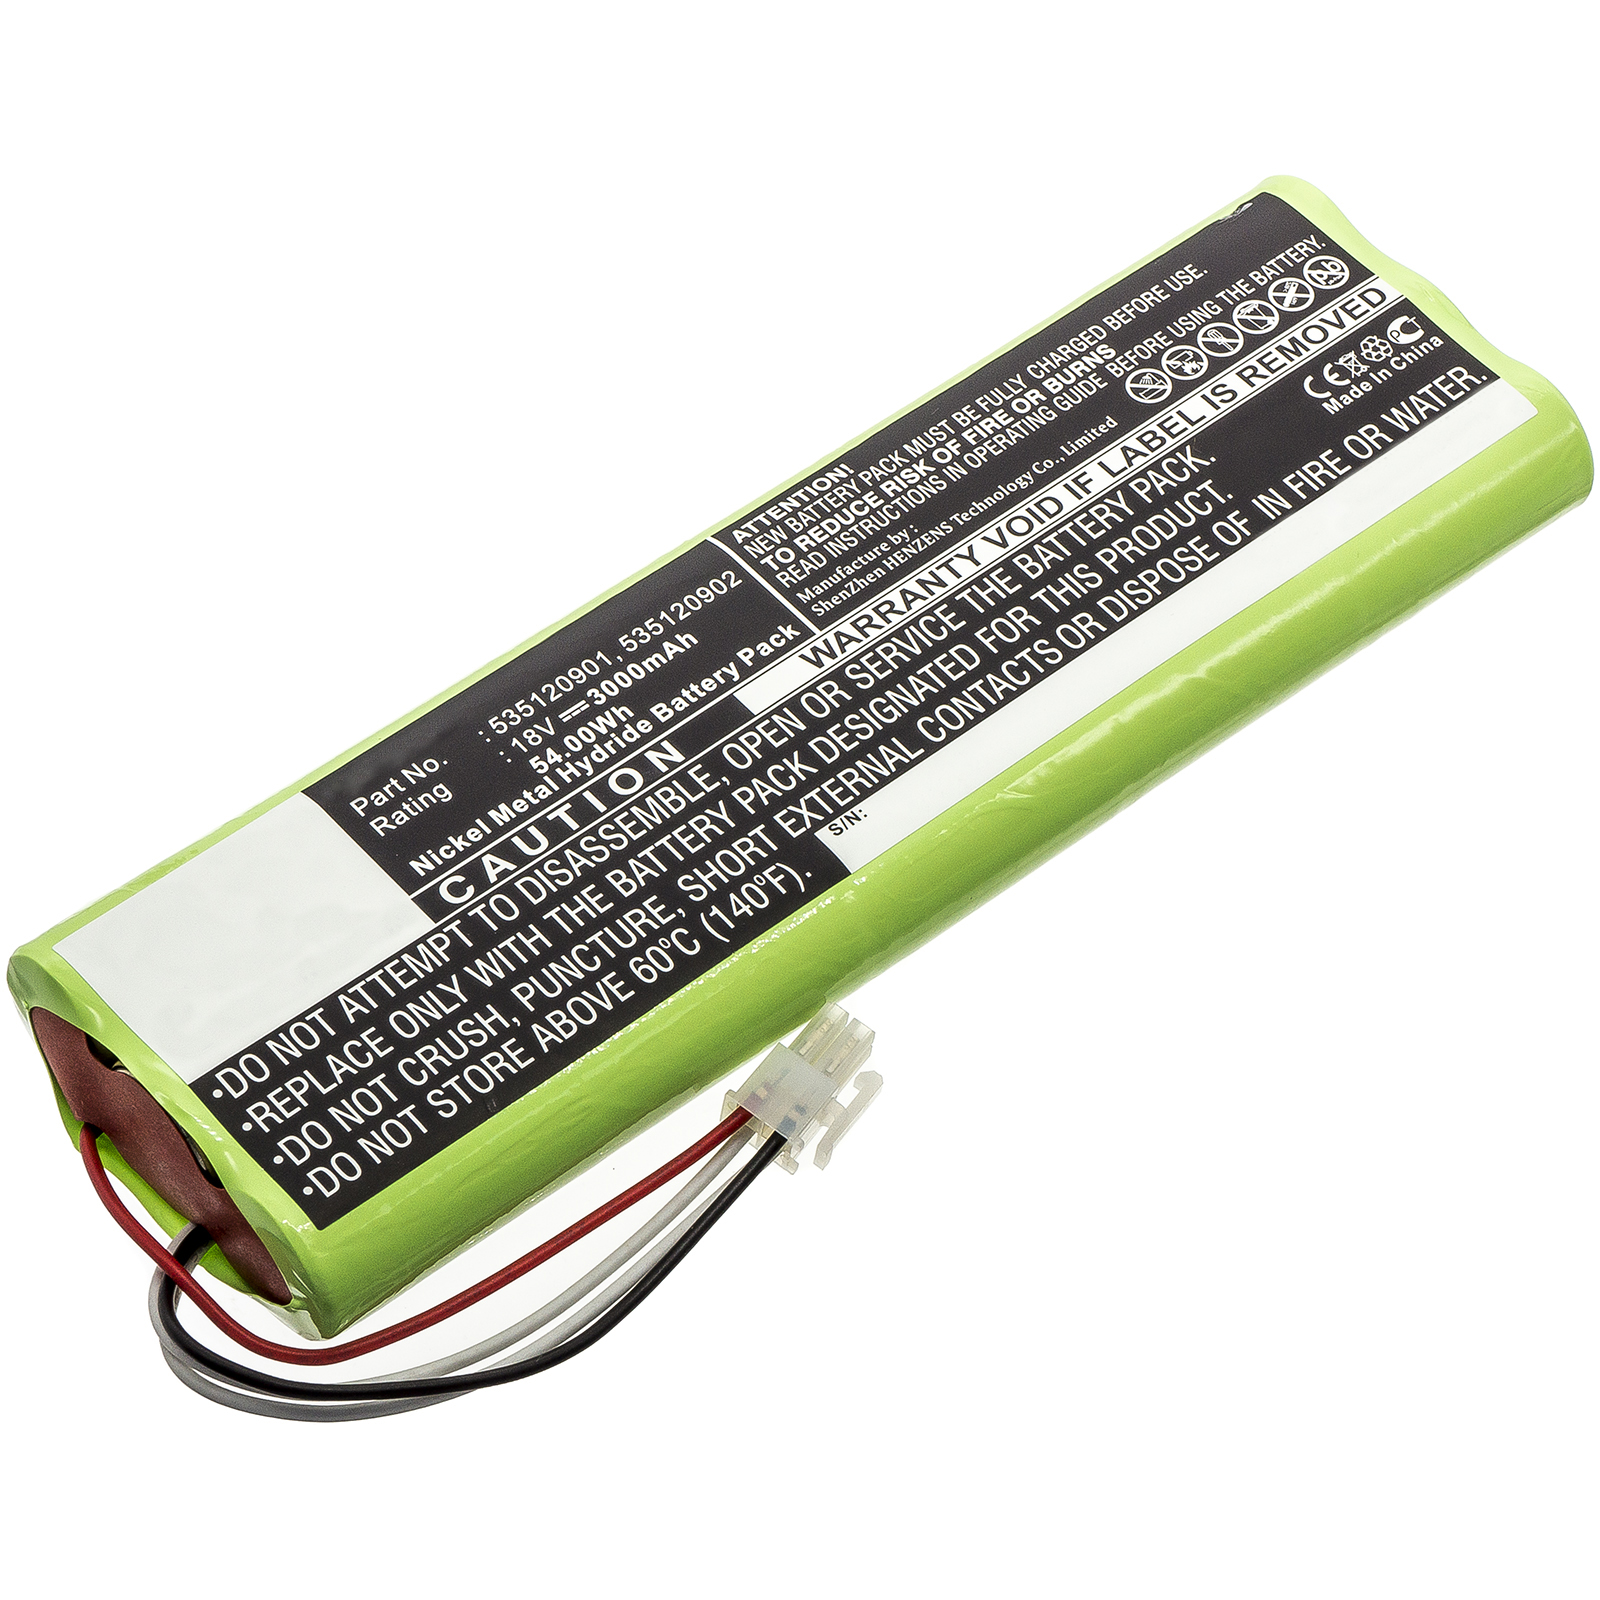 Batteries for HusqvarnaLawn Mower